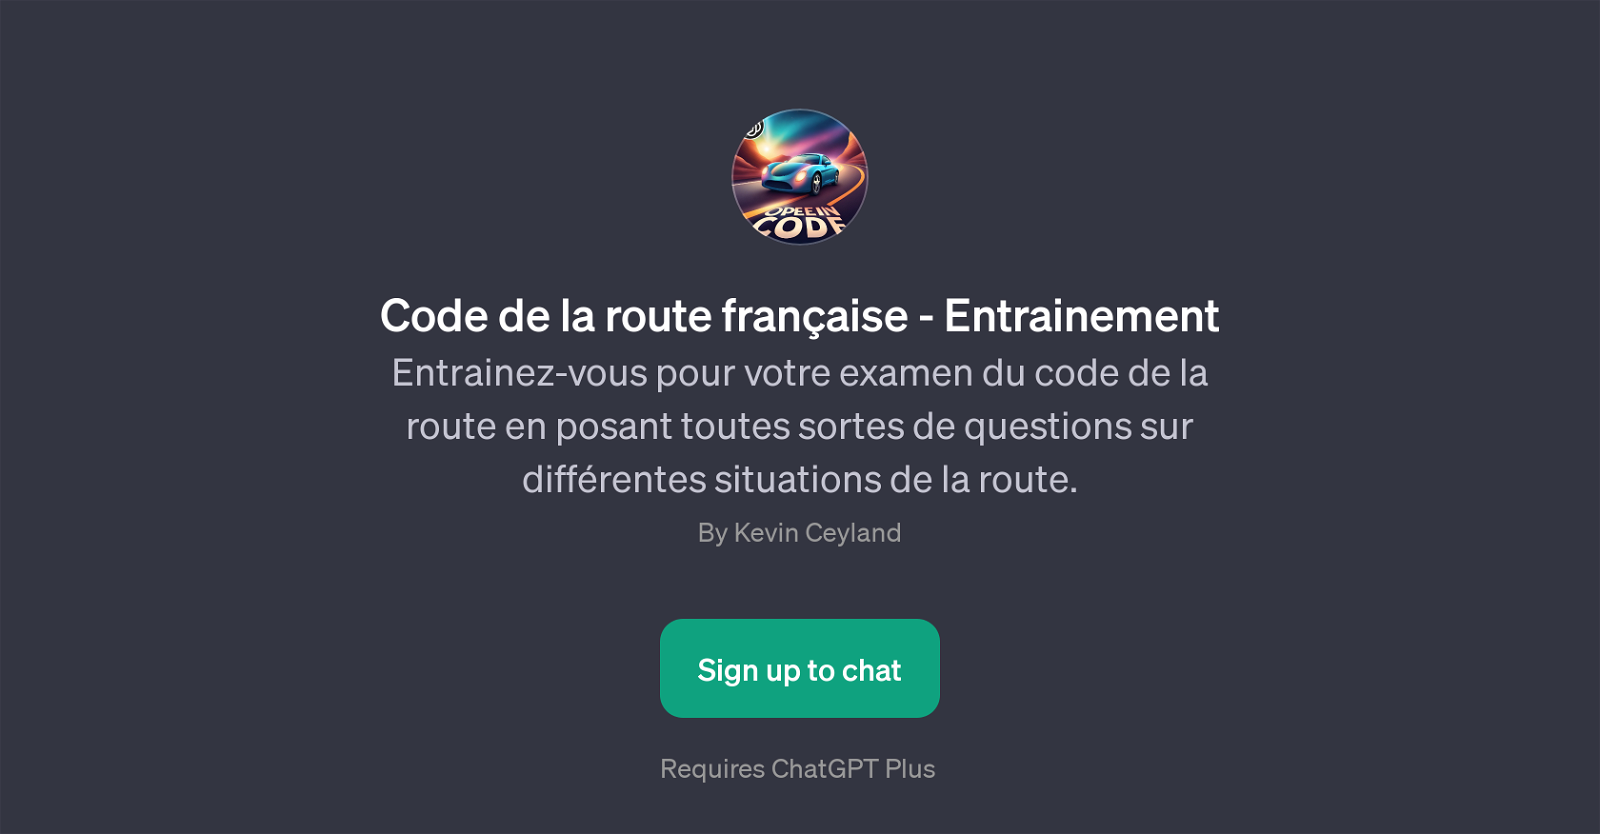 Code de la route franaise - Entrainement website